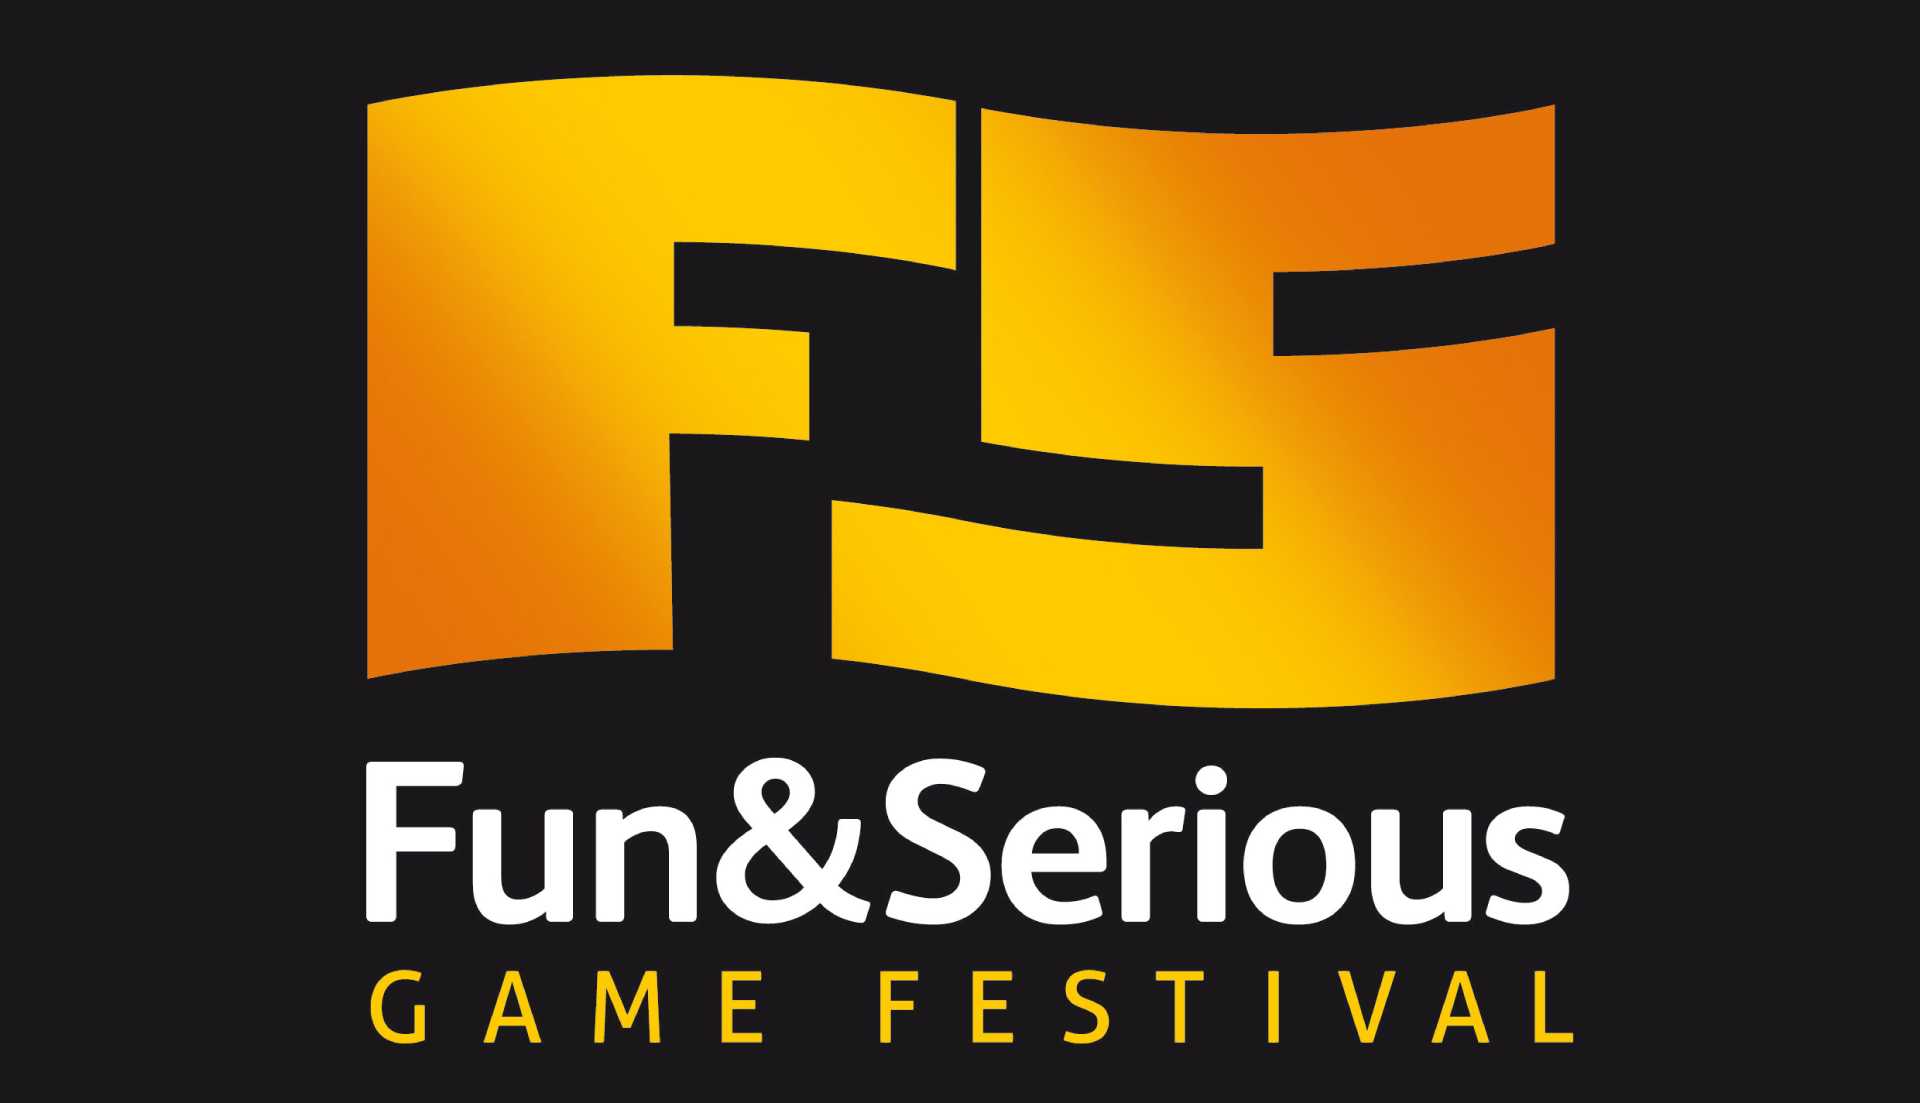 Fun & Serious Game Festival ofrecerá una completa programación de charlas en torno al videojuego indie.